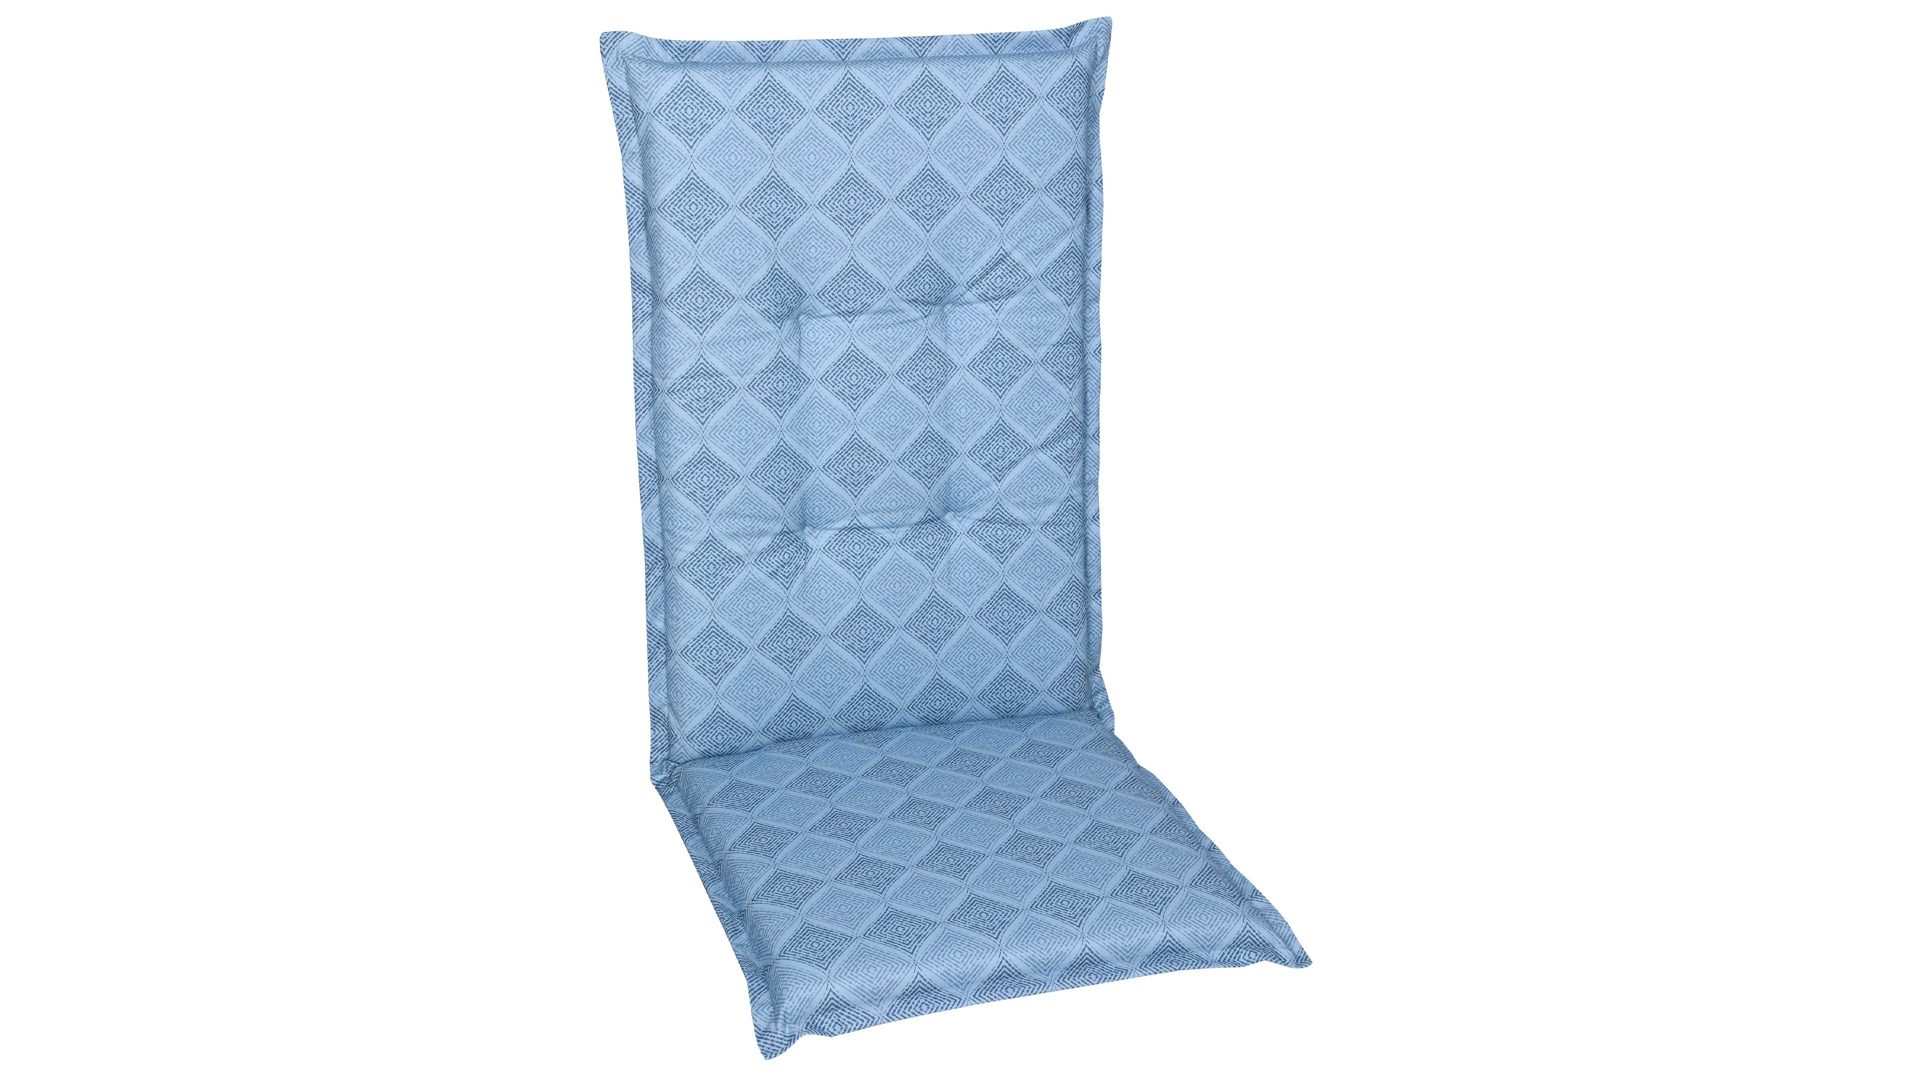 Polsterauflage Go-de textil aus Stoff in Hellblau GO-DE TEXTIL Auflagen Serie 19 - Sesselauflage hellblaue Rautenlinien - ca. 50 x 120 cm